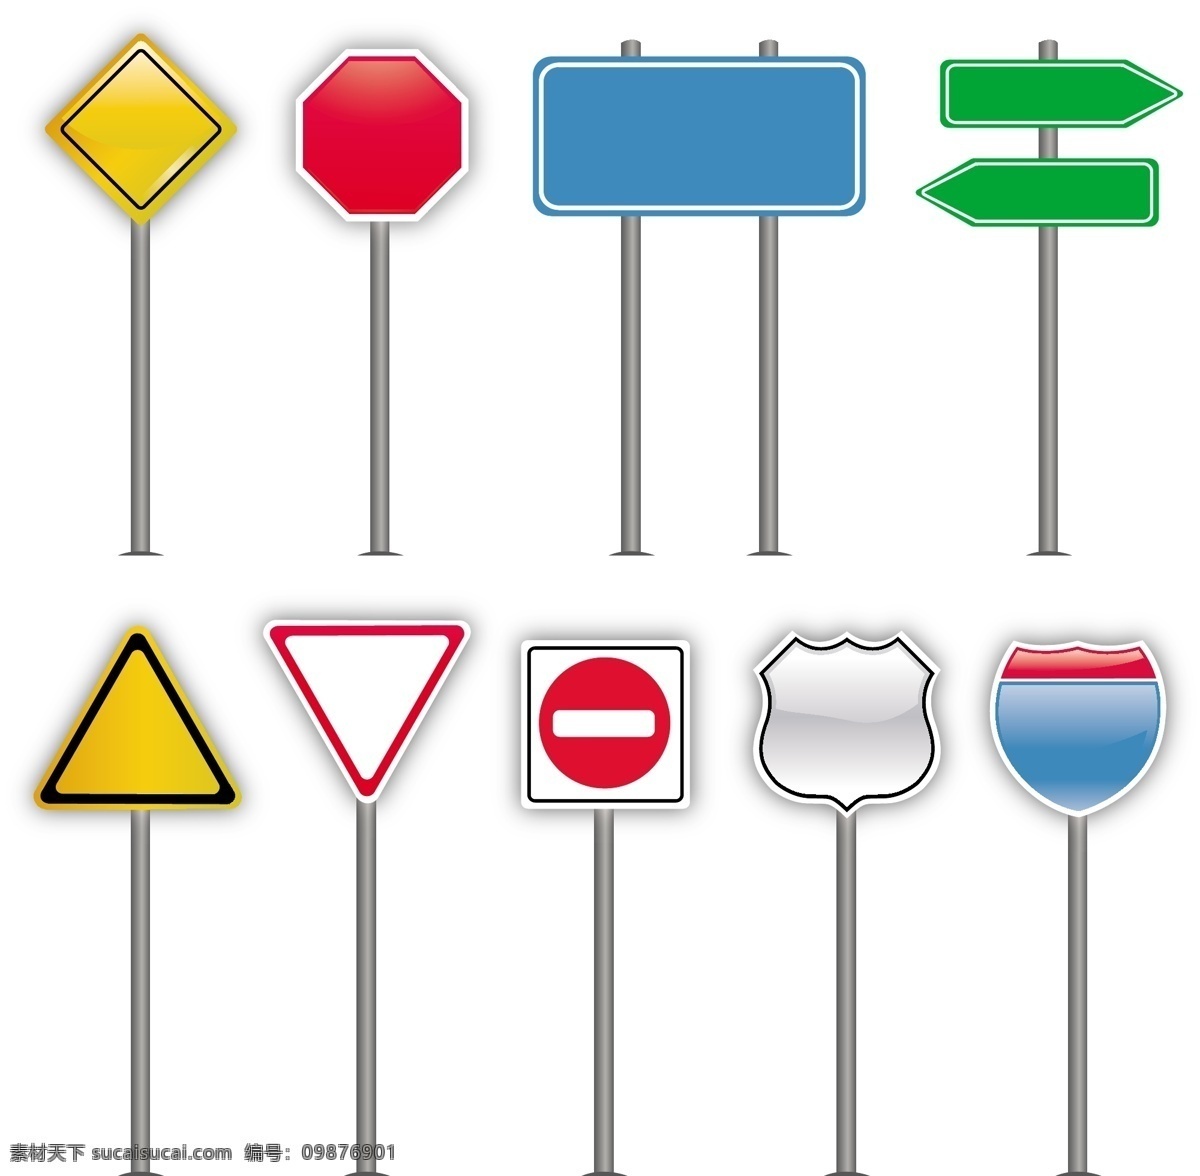 标志 道路 道路标志 路标 设置 自由 设置道路 设置路标自由 向量 集 交通 停止 设置路标 路标设置免费 向量的路标 路标设置 矢量图 其他矢量图